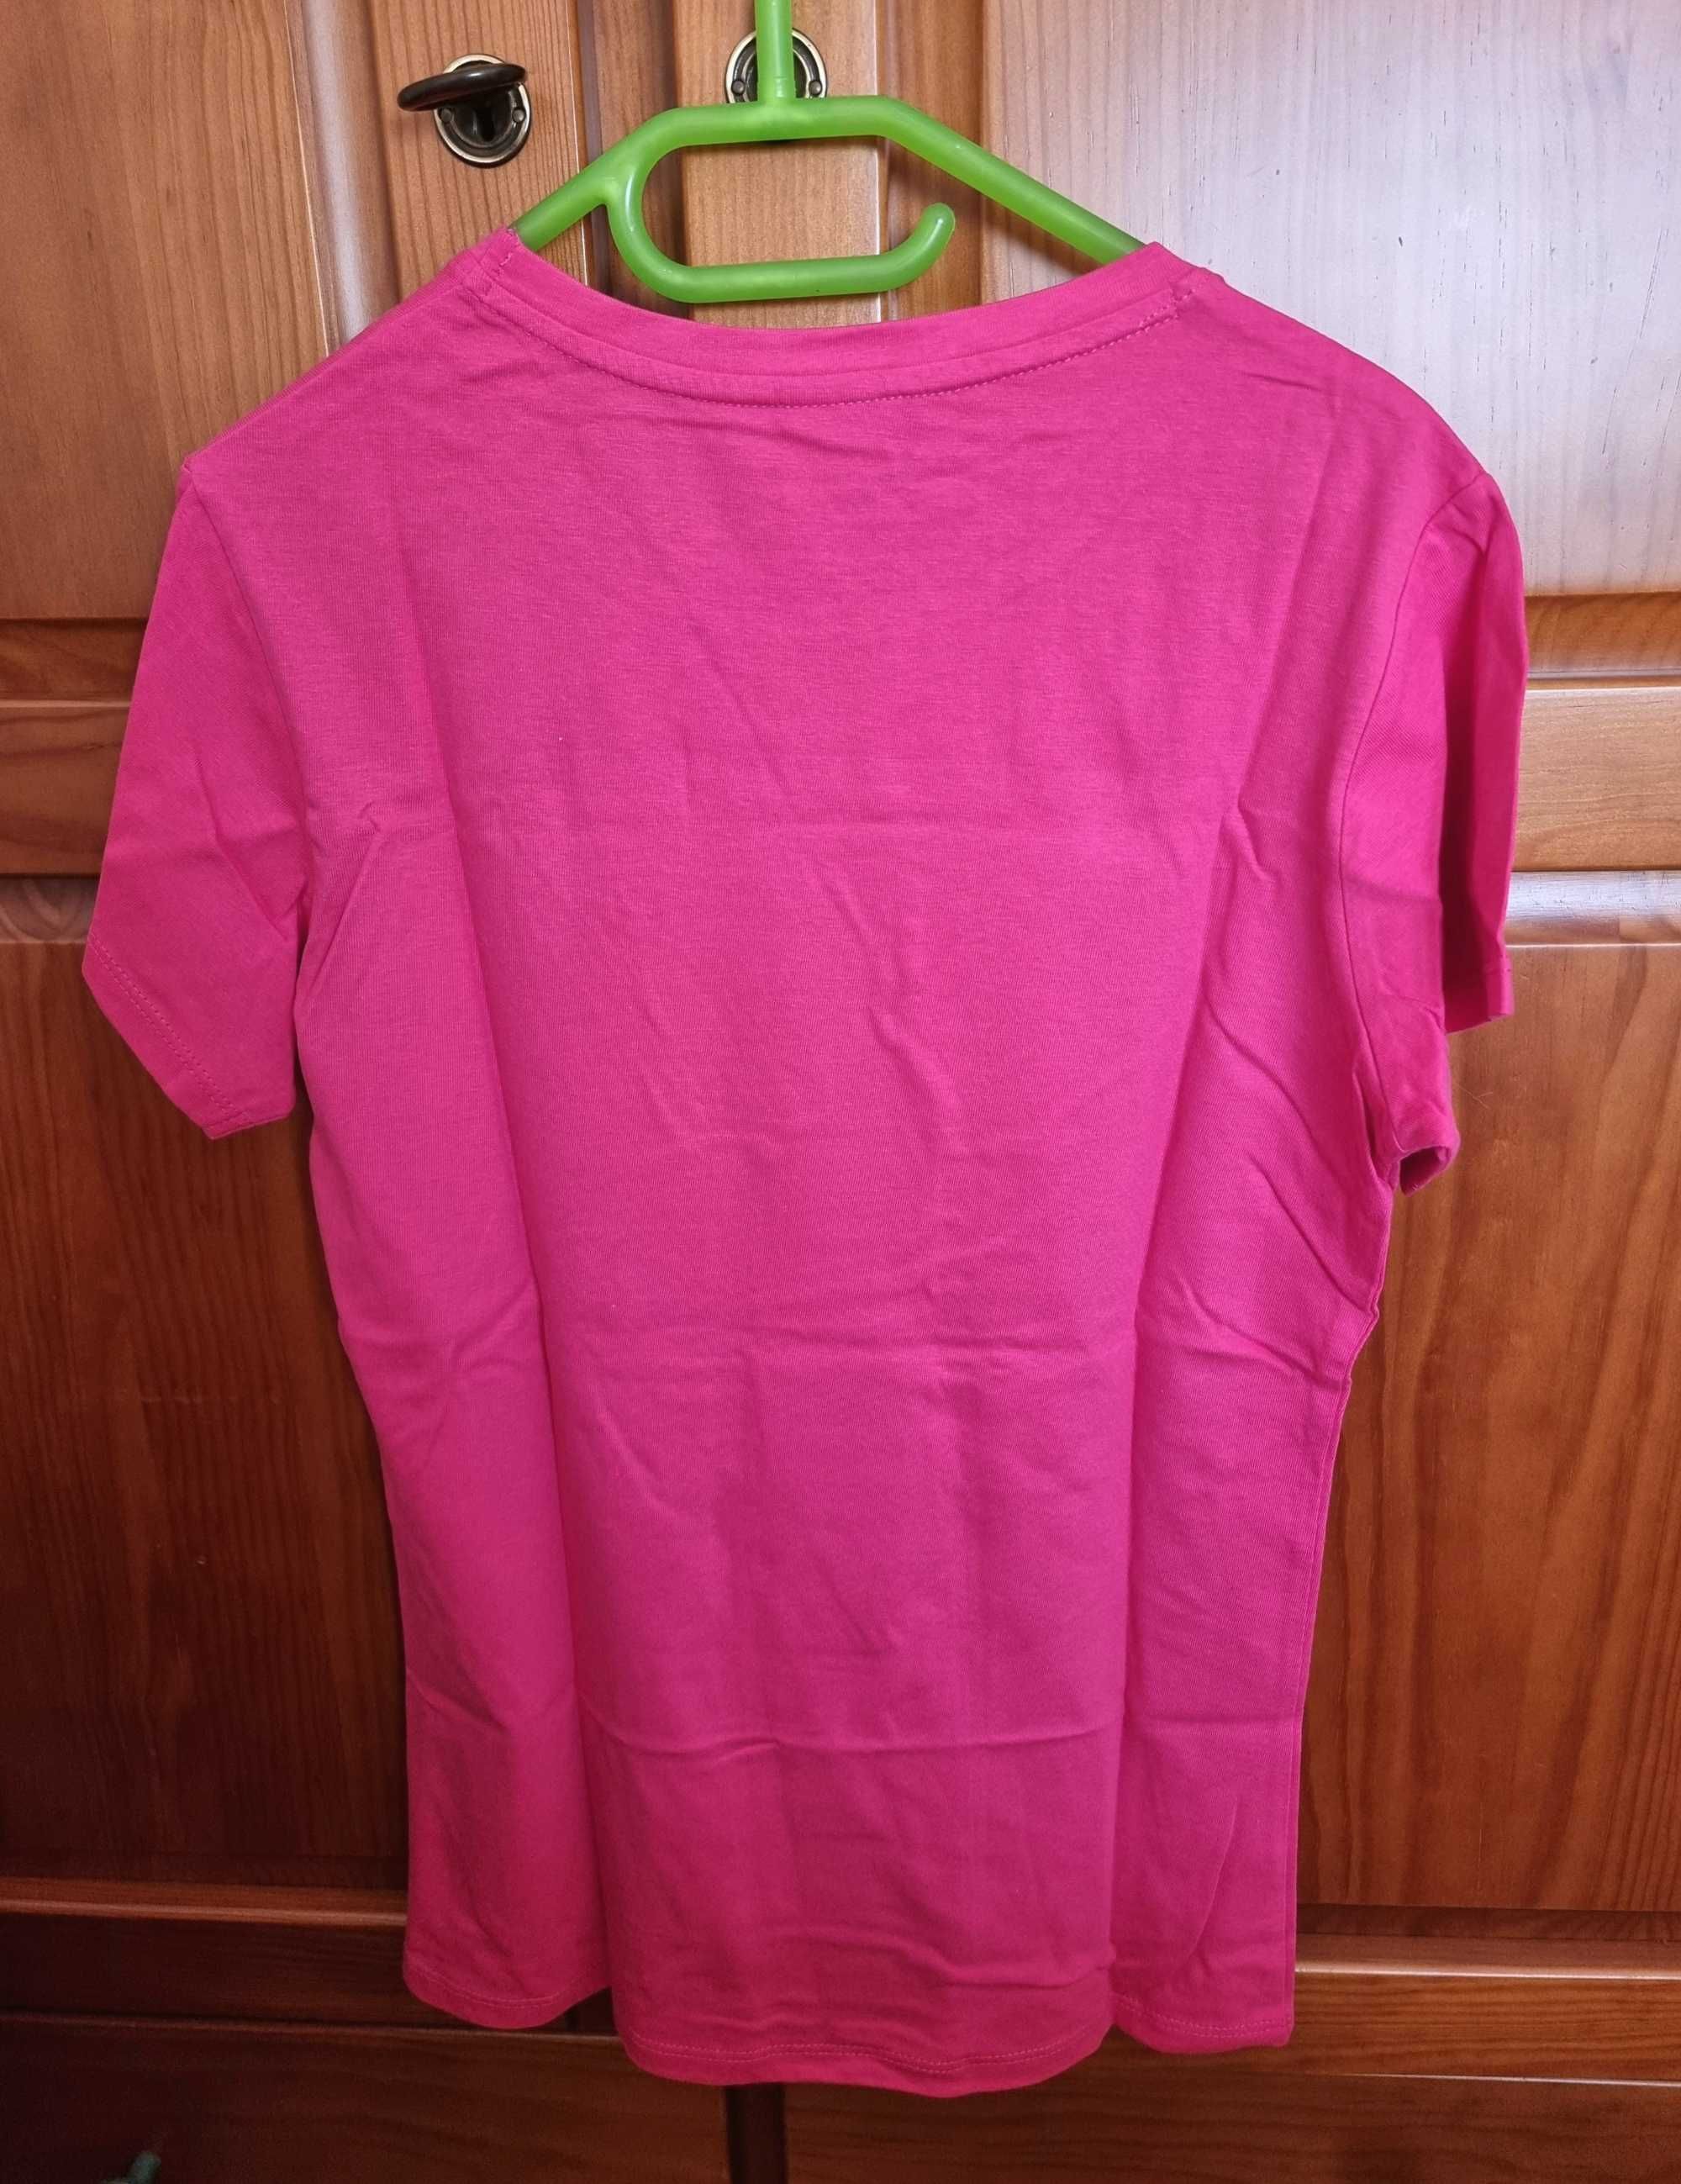 T-shirt rosa forte Nazaré Na Design, tamanho S - nova com etiqueta